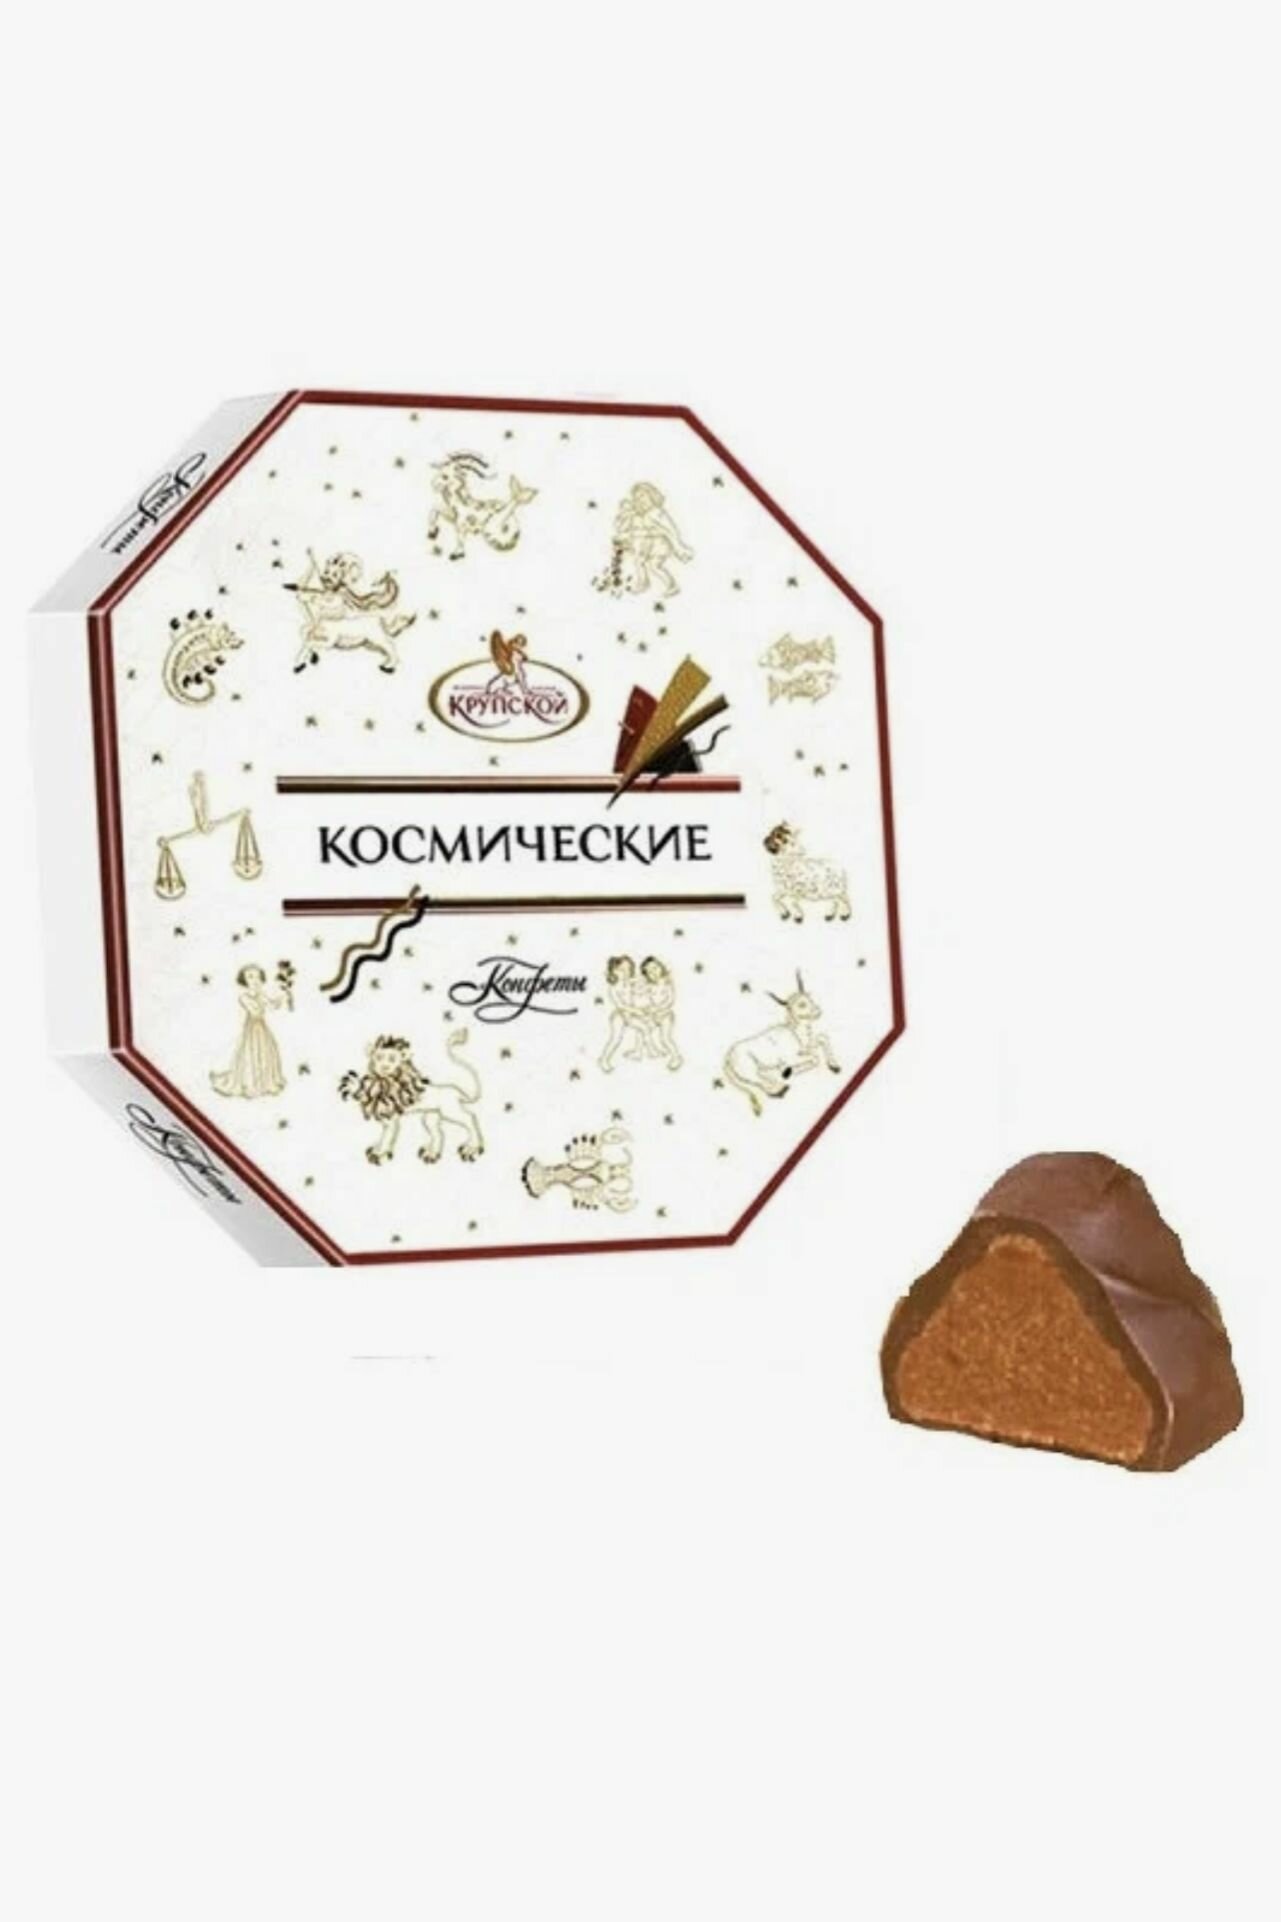 Набор конфет шоколадных Космические фабрика имени Крупской, 460 гр. Сладости в подарок женщине, мужчине на День рождения